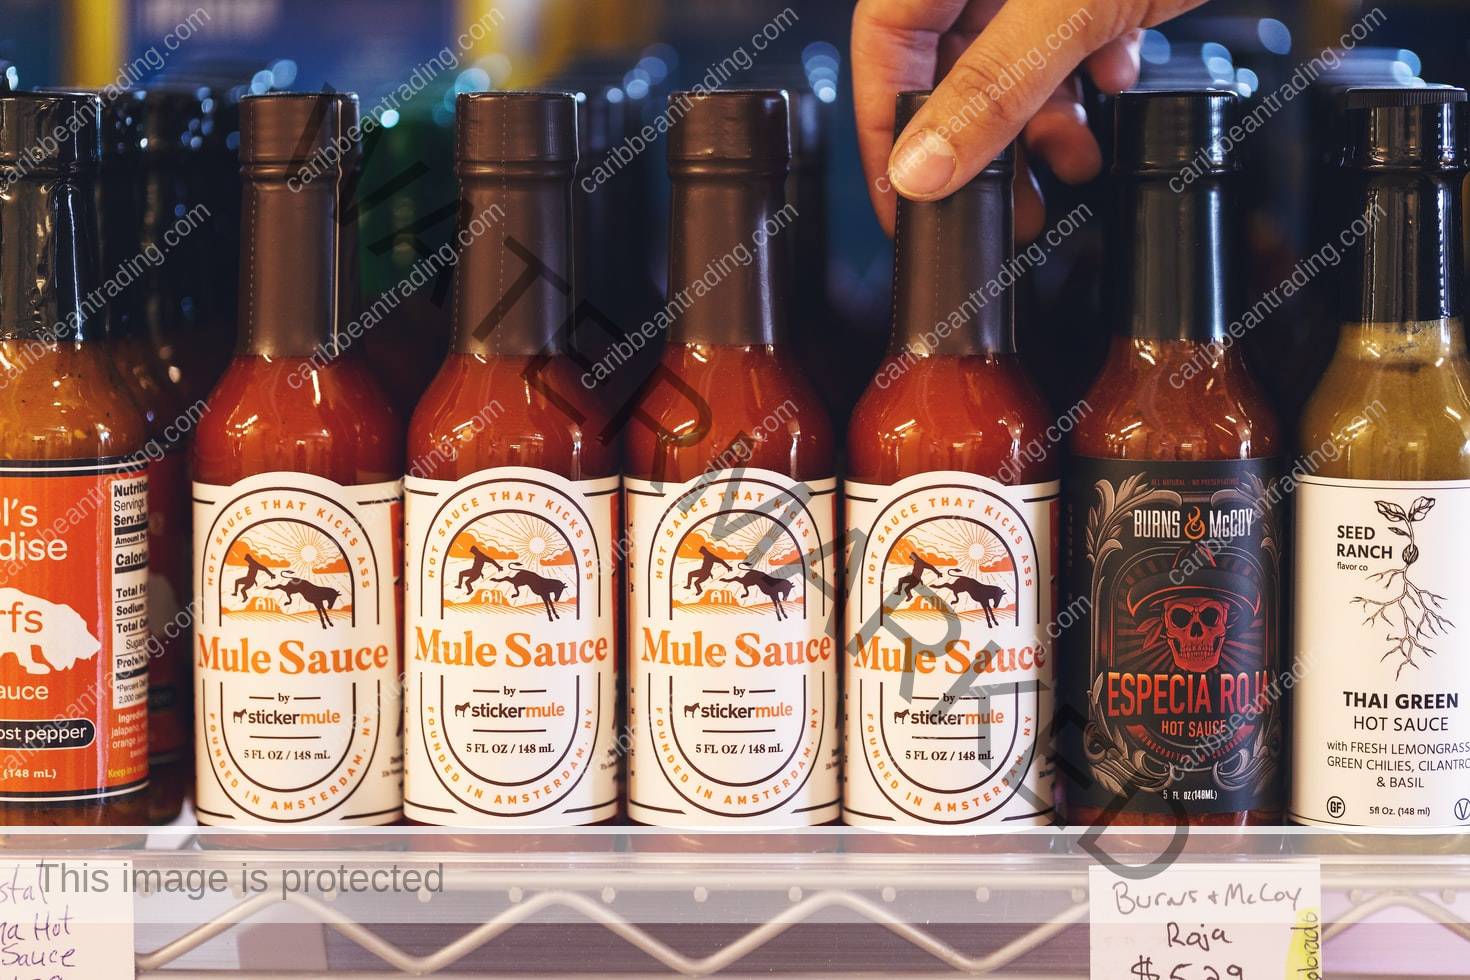 Widow Maker on Hot Ones S11! - Dingo Sauce Co